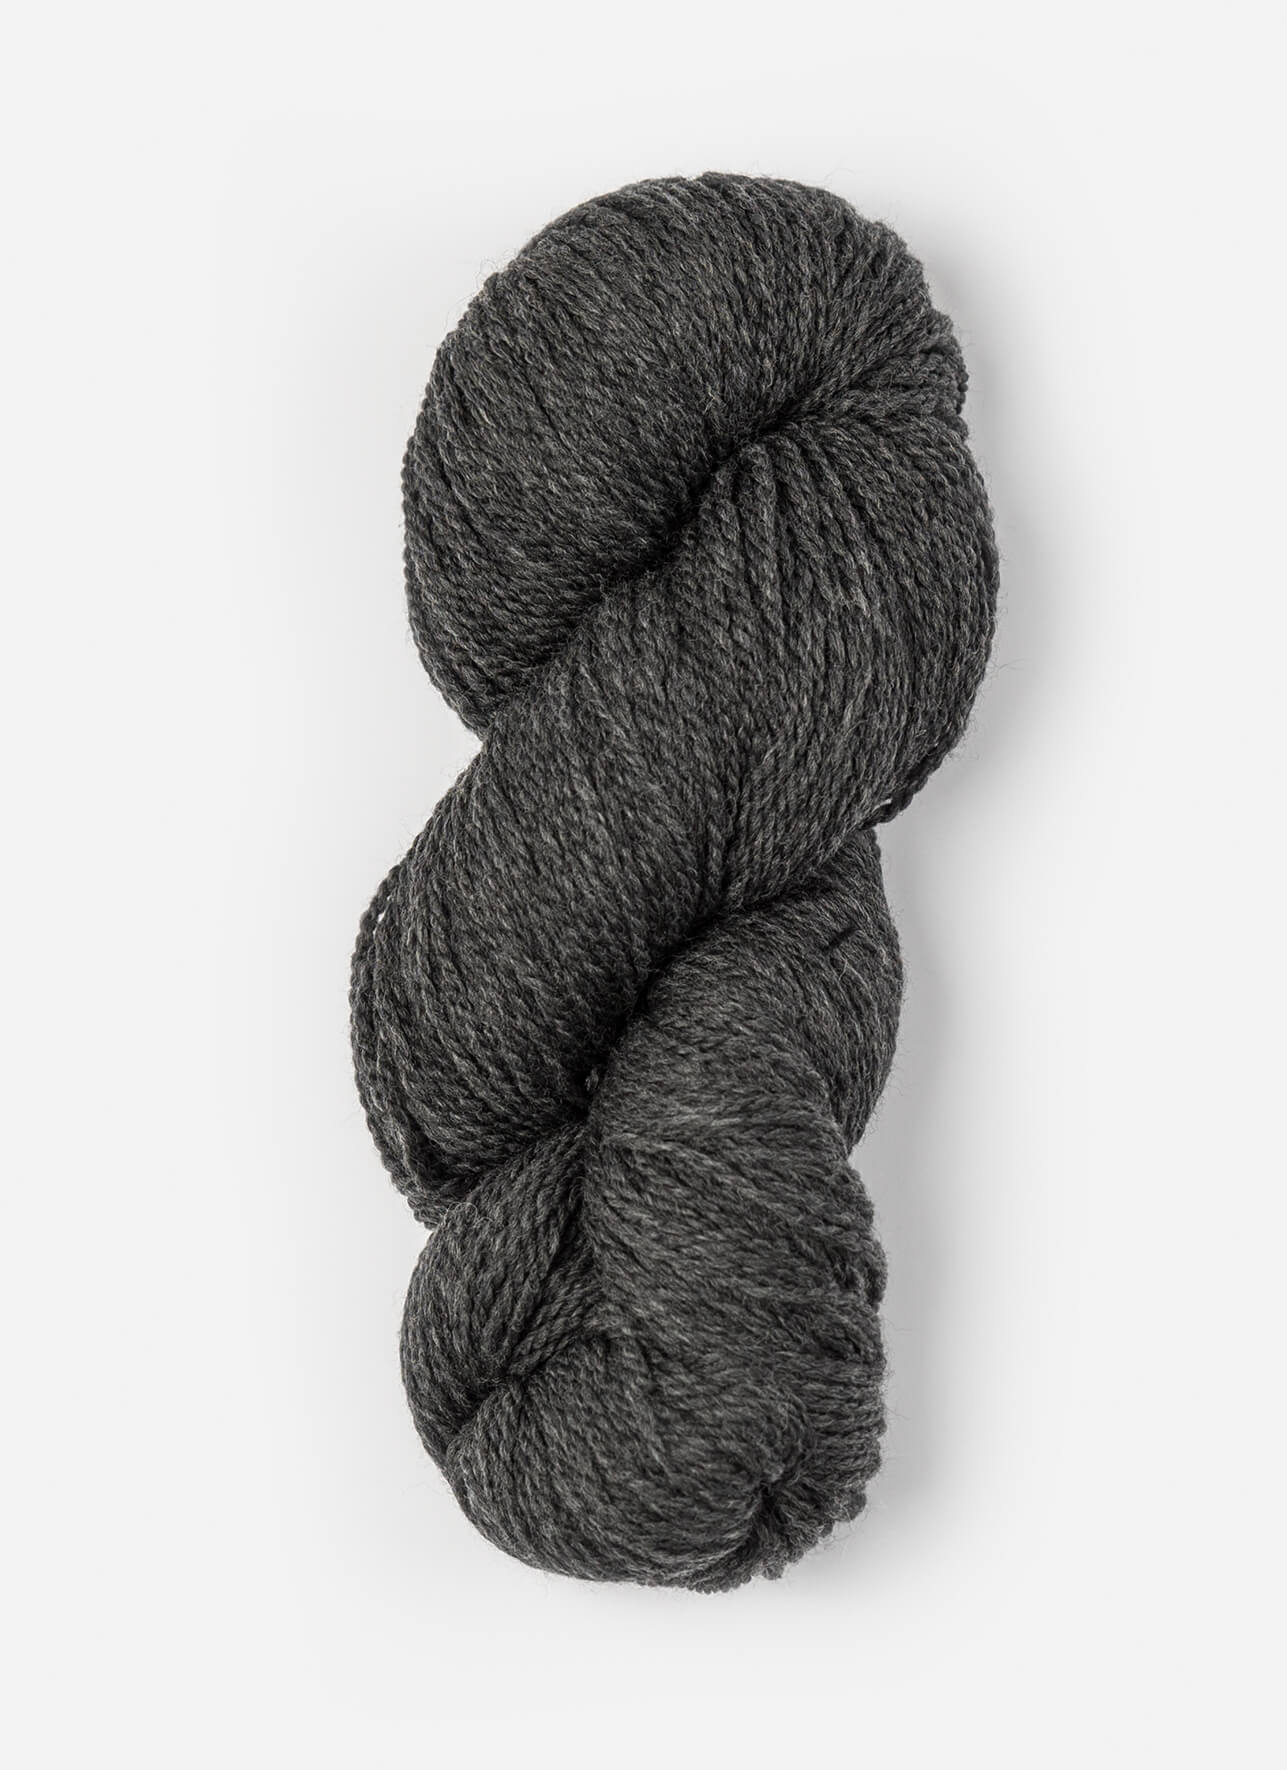 Blue Sky Fibers Woolstok Tweed (Aran) Yarn - 3302 Silver Birch at Jimmy  Beans Wool